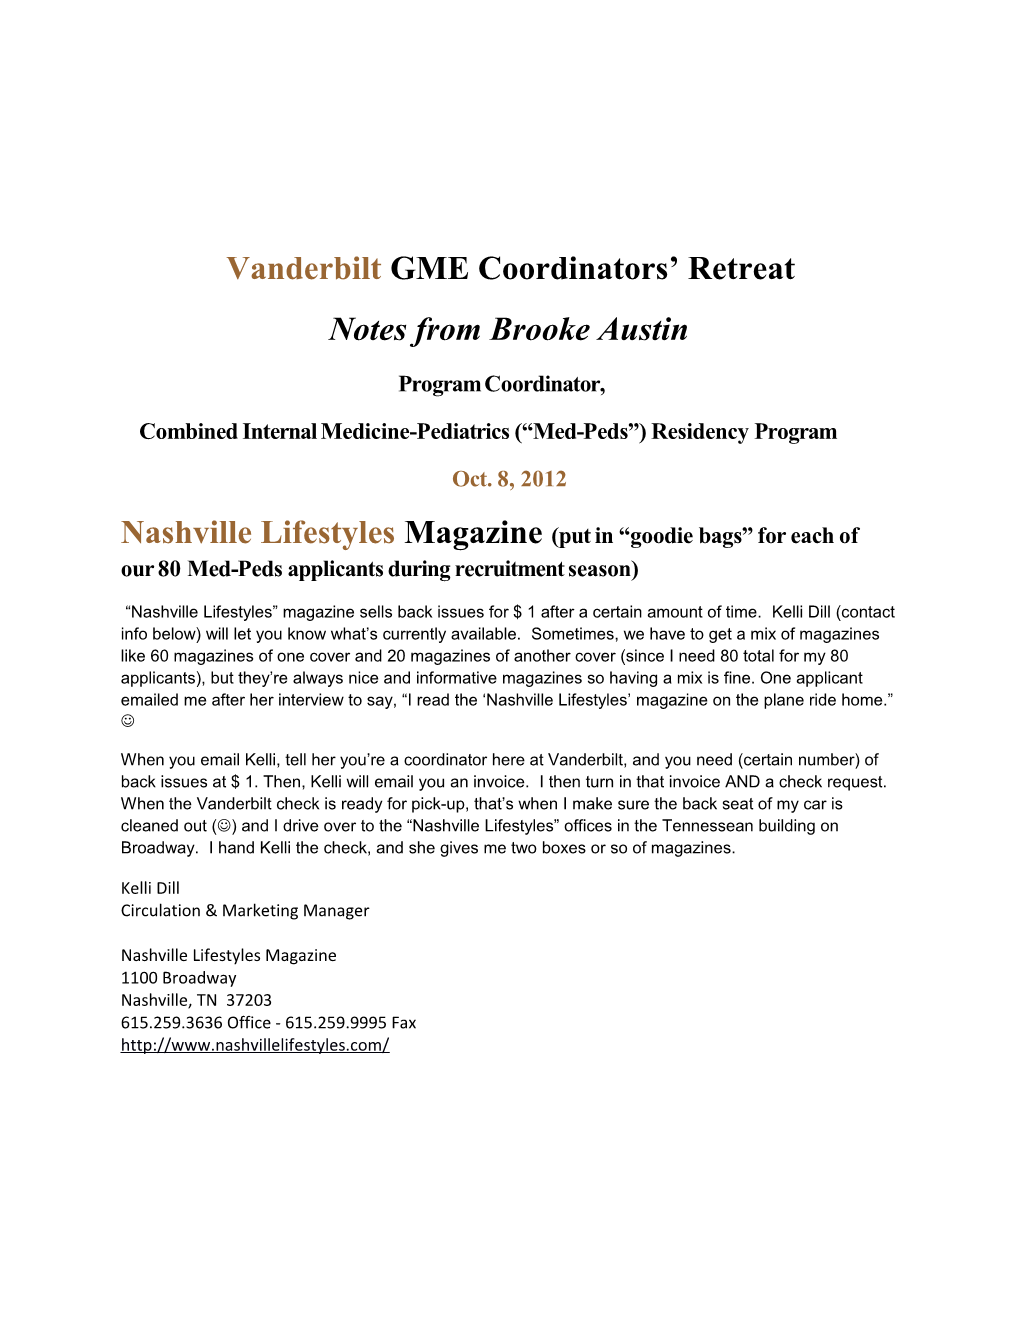 Vanderbilt GME Coordinators Retreat